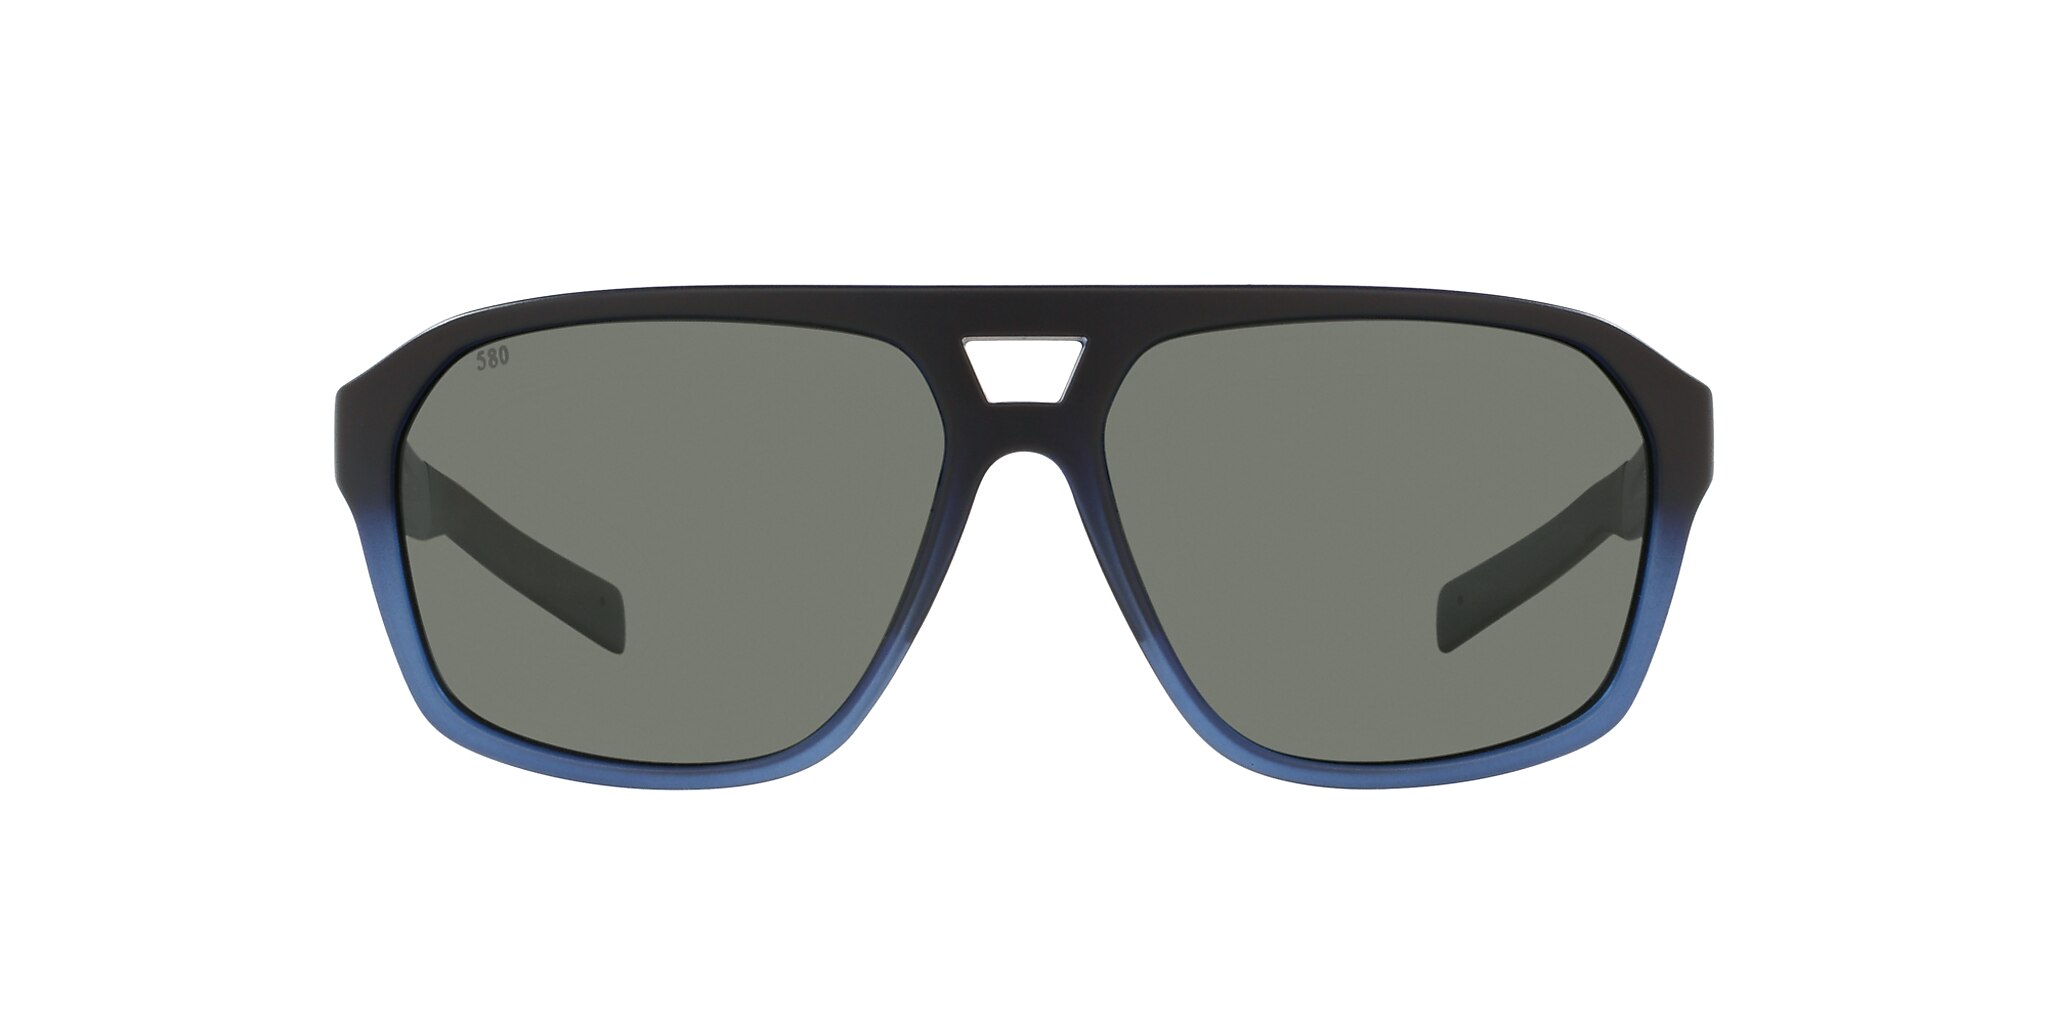 Switchfoot Polarized Sunglasses in Gray | Costa Del Mar®